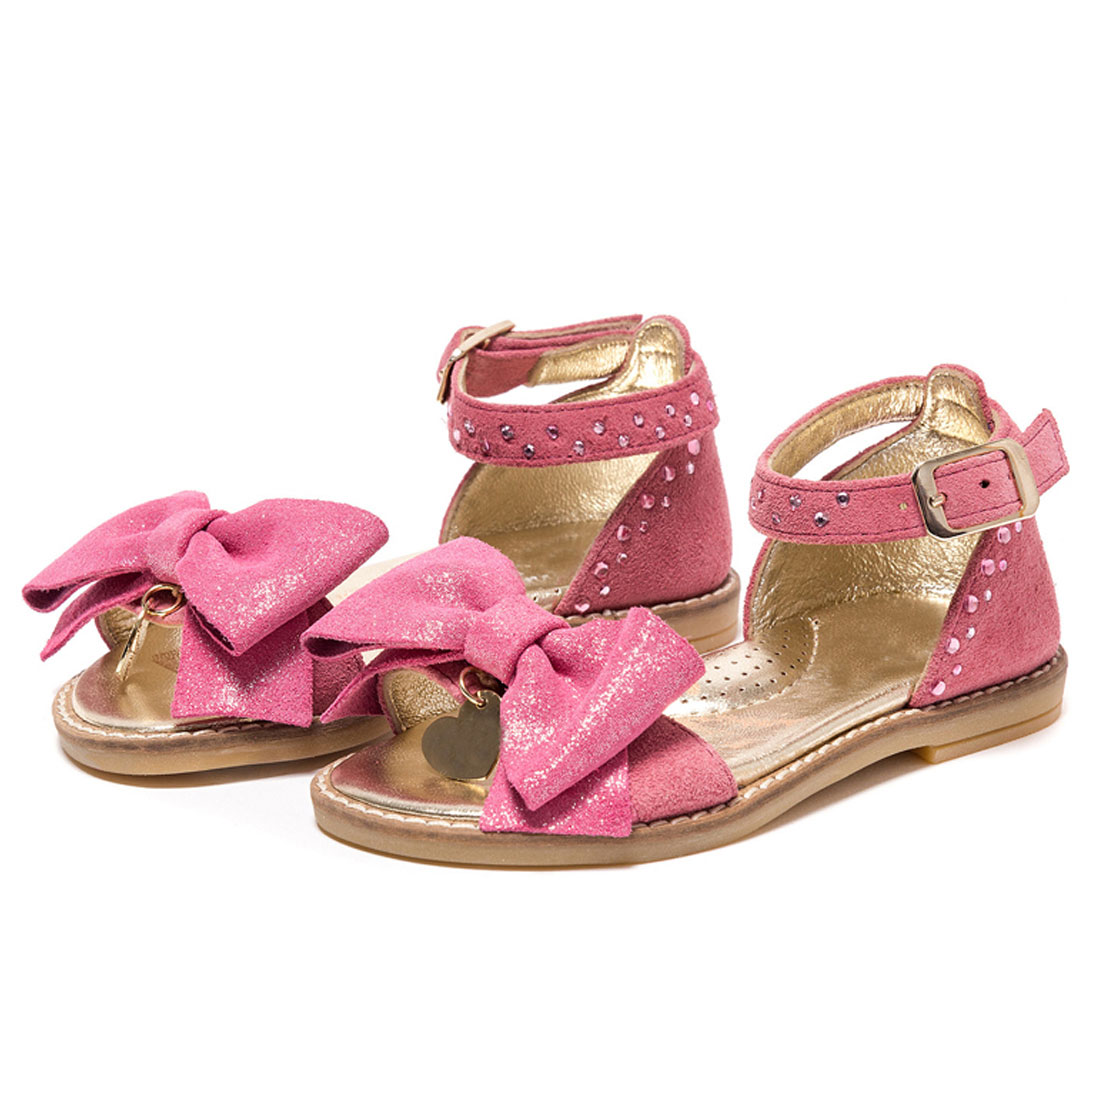 Design New Custom Child Sandal For Girls Fancy Leather Kid Sandal KD0110